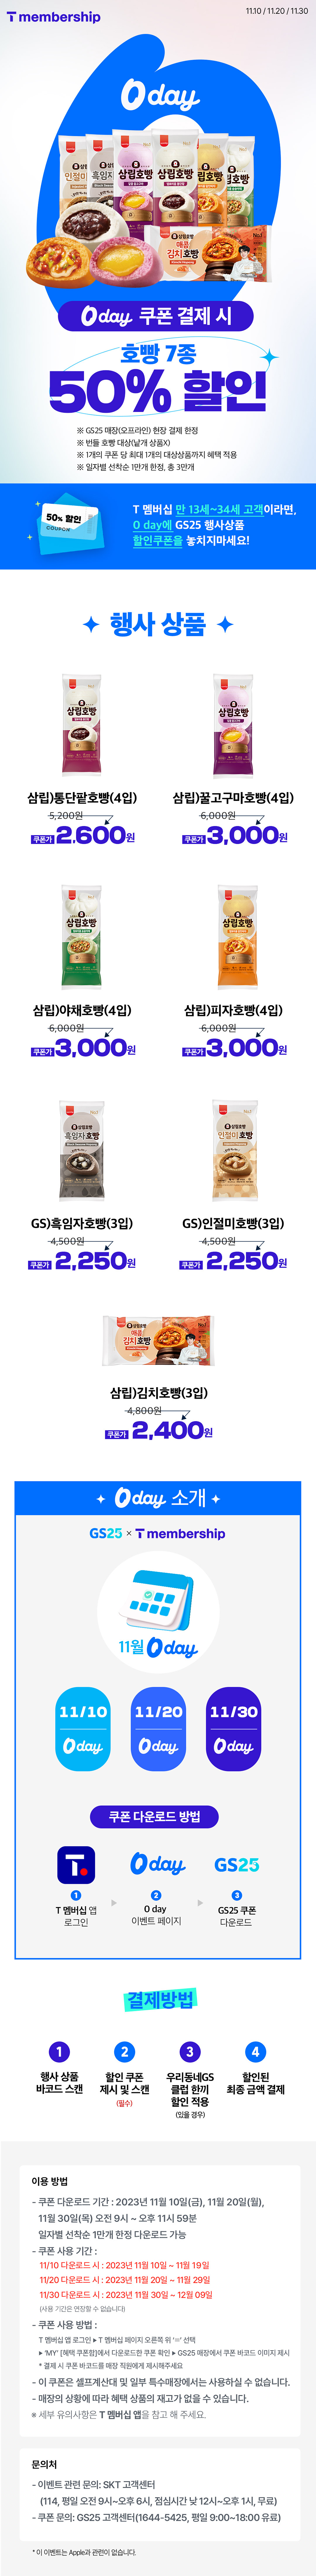 GS25 x T 멤버십 0 day 따뜻한 호빵 50% 할인 받자!